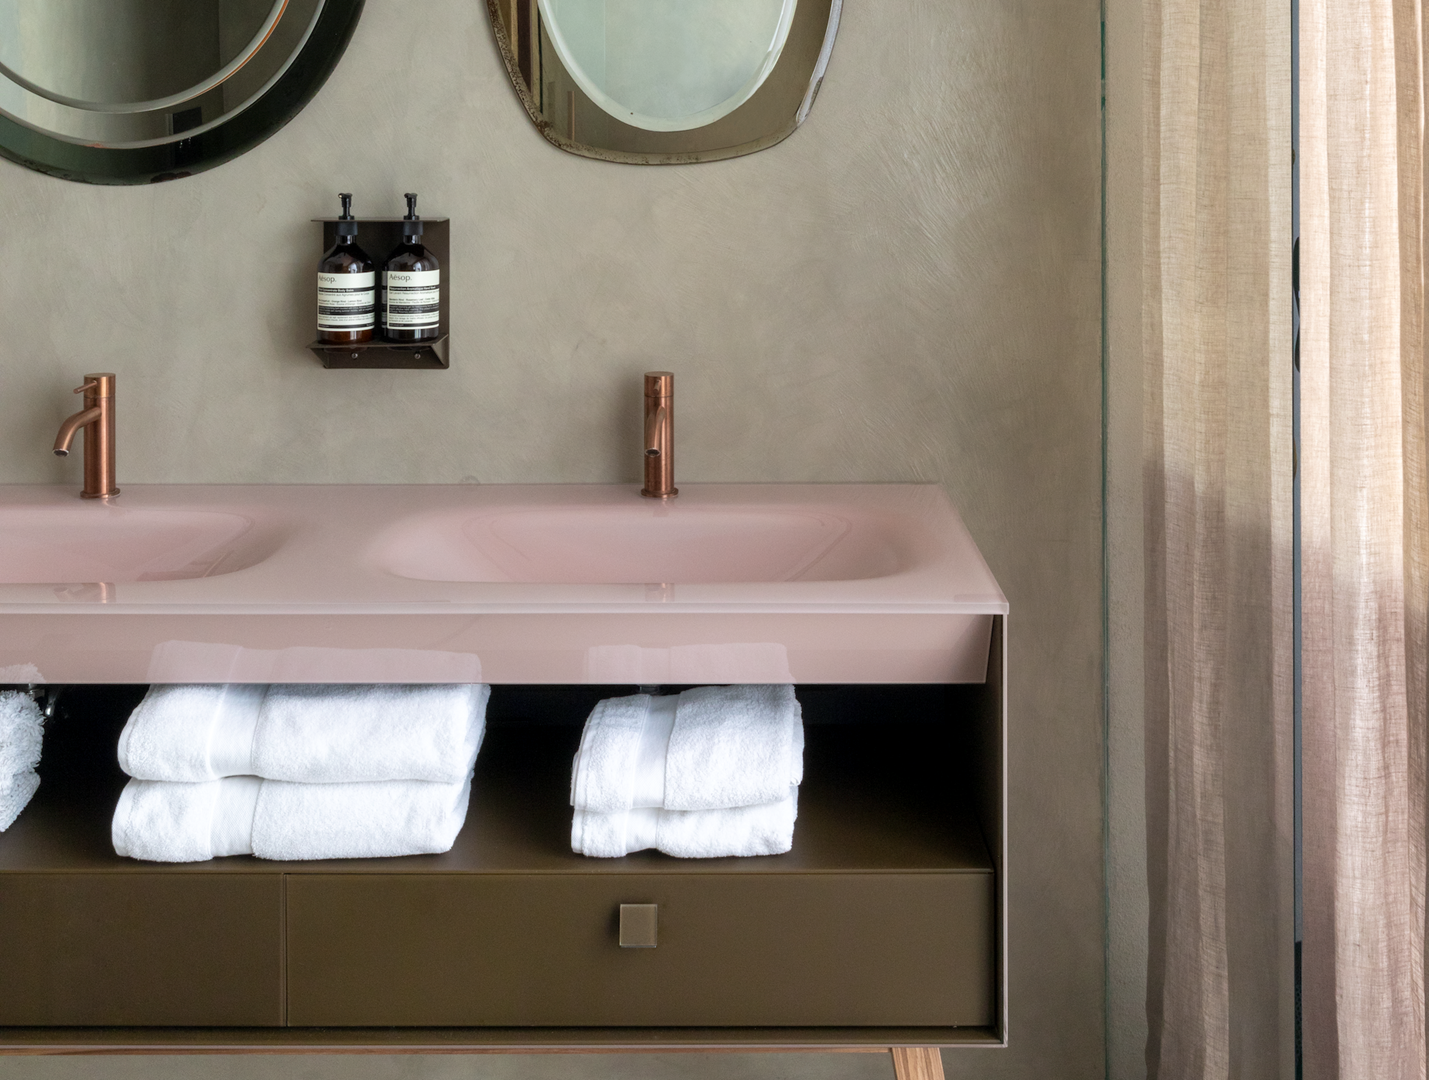 7 x hotelkwaliteit voor jouw badkamer